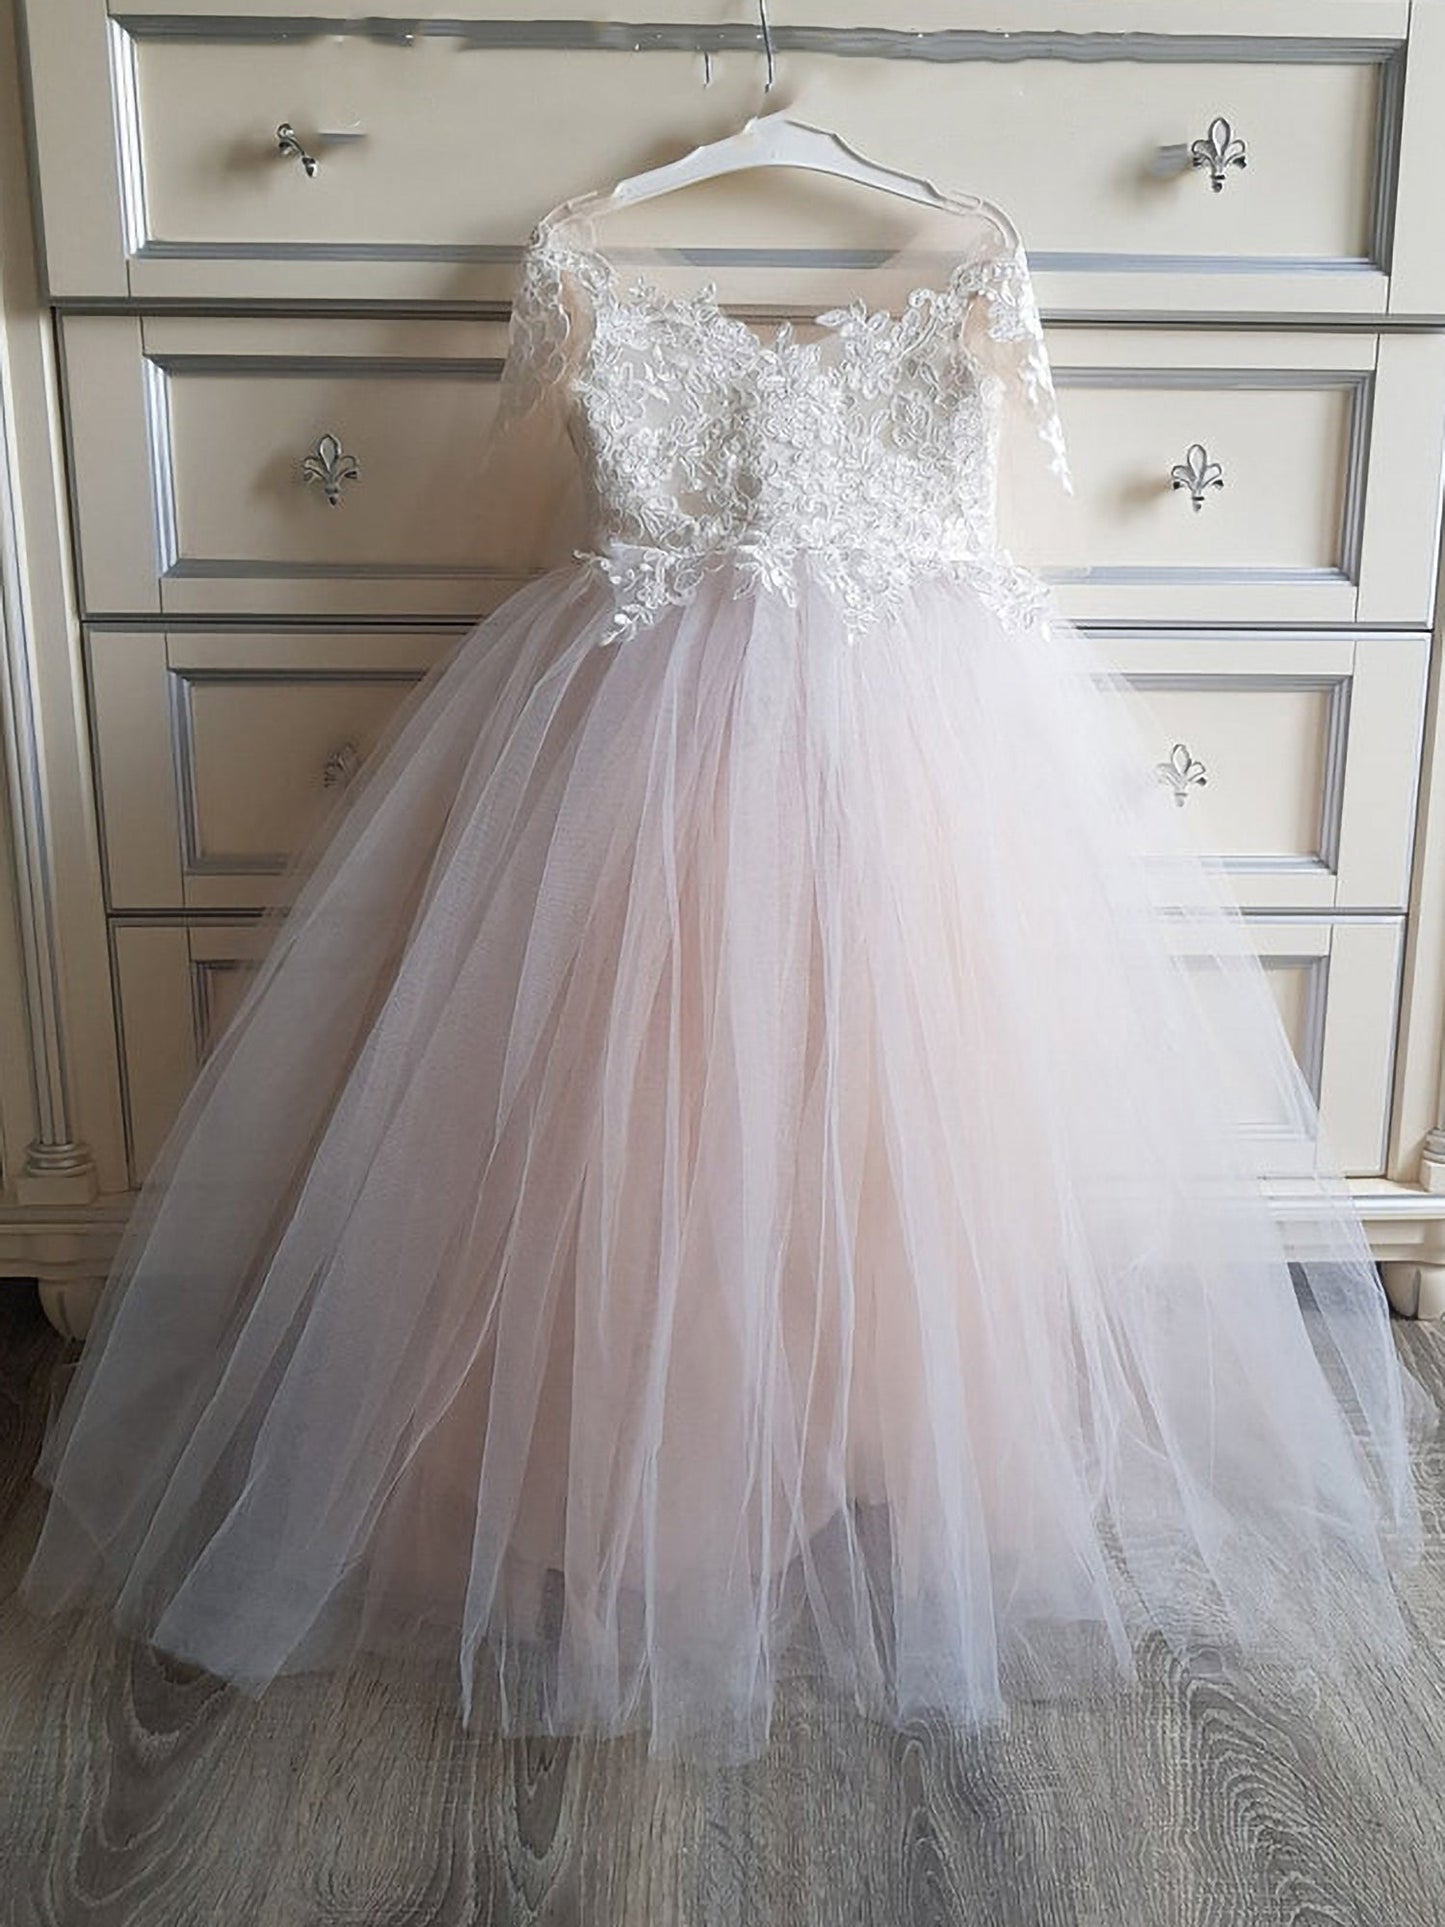 Kaufen Sie Elegante Blumenmädchenkleider mit Günstig pries. Rosa Blumenmädchenkleid Spitze aus Tüll zur Hochzeit gehen.